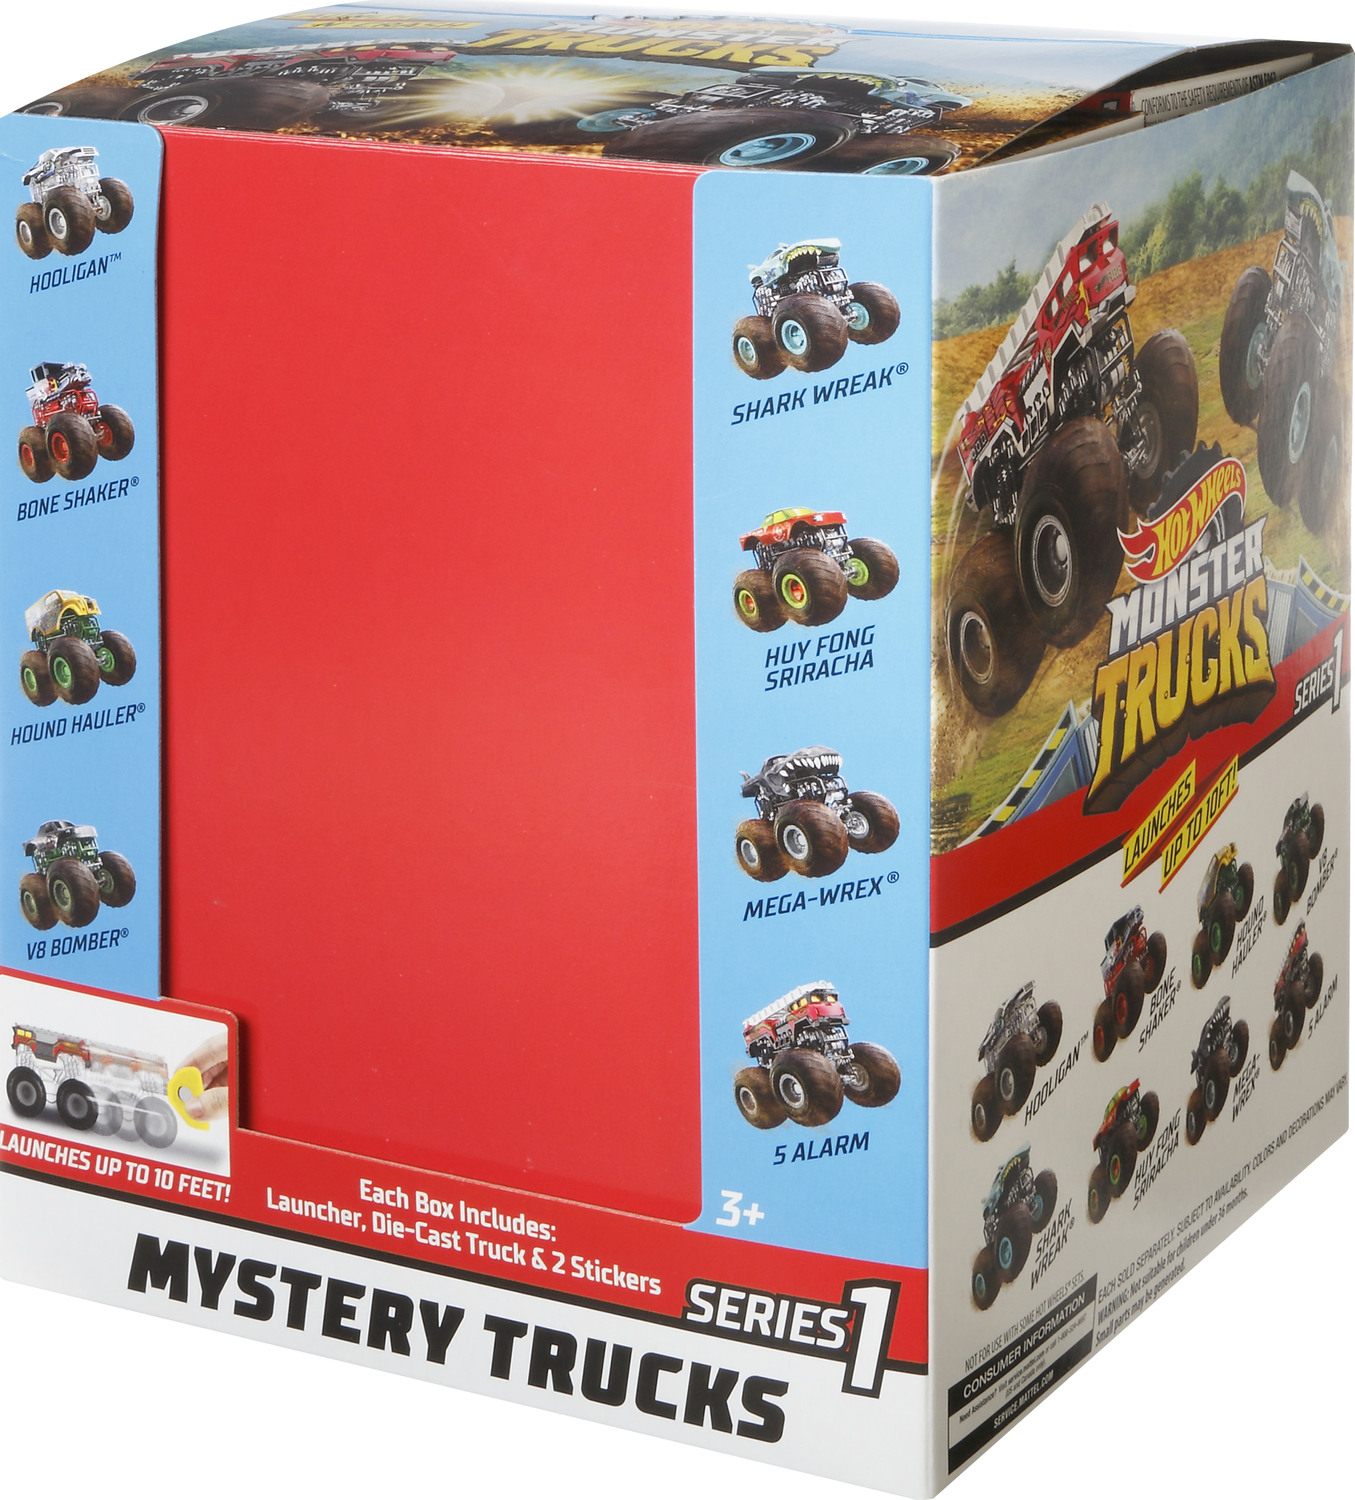 Hot Wheels Monster Trucks Mystery Vehicle